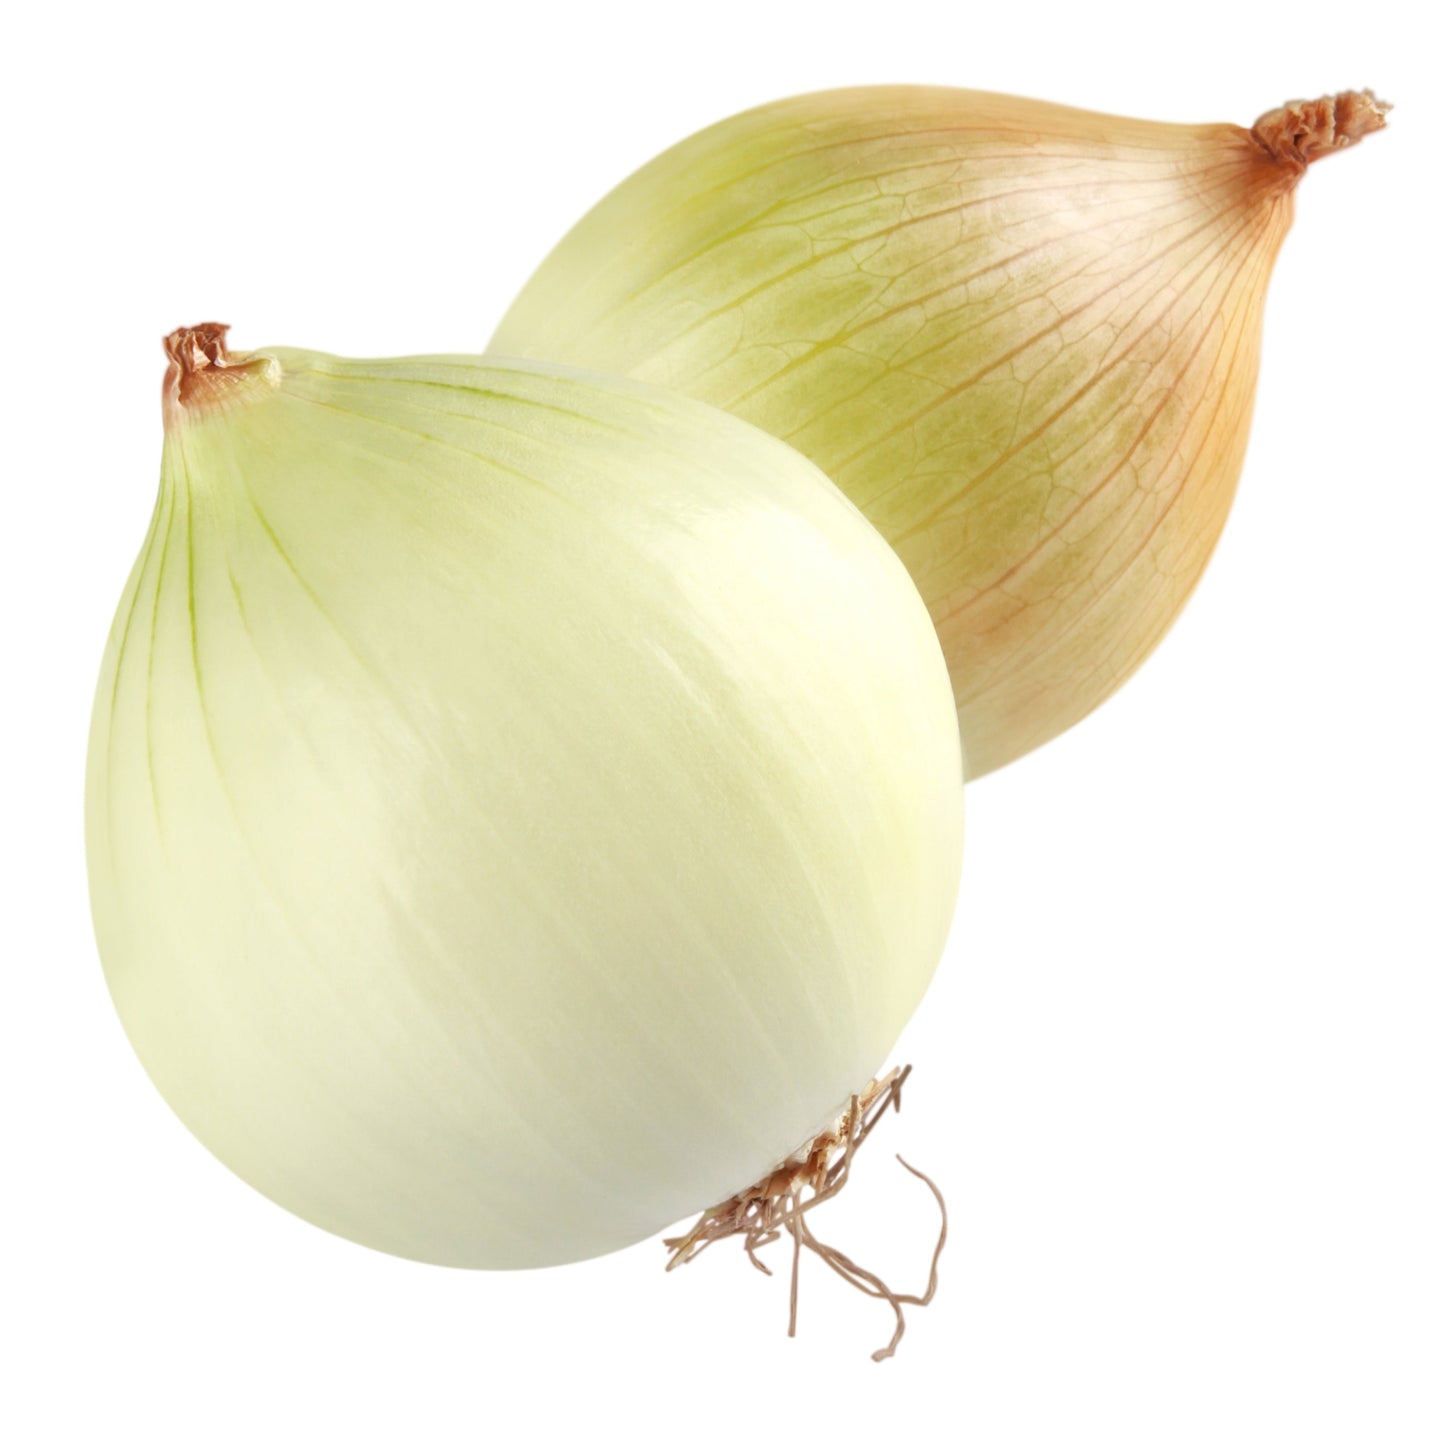 Onion White (per pound)